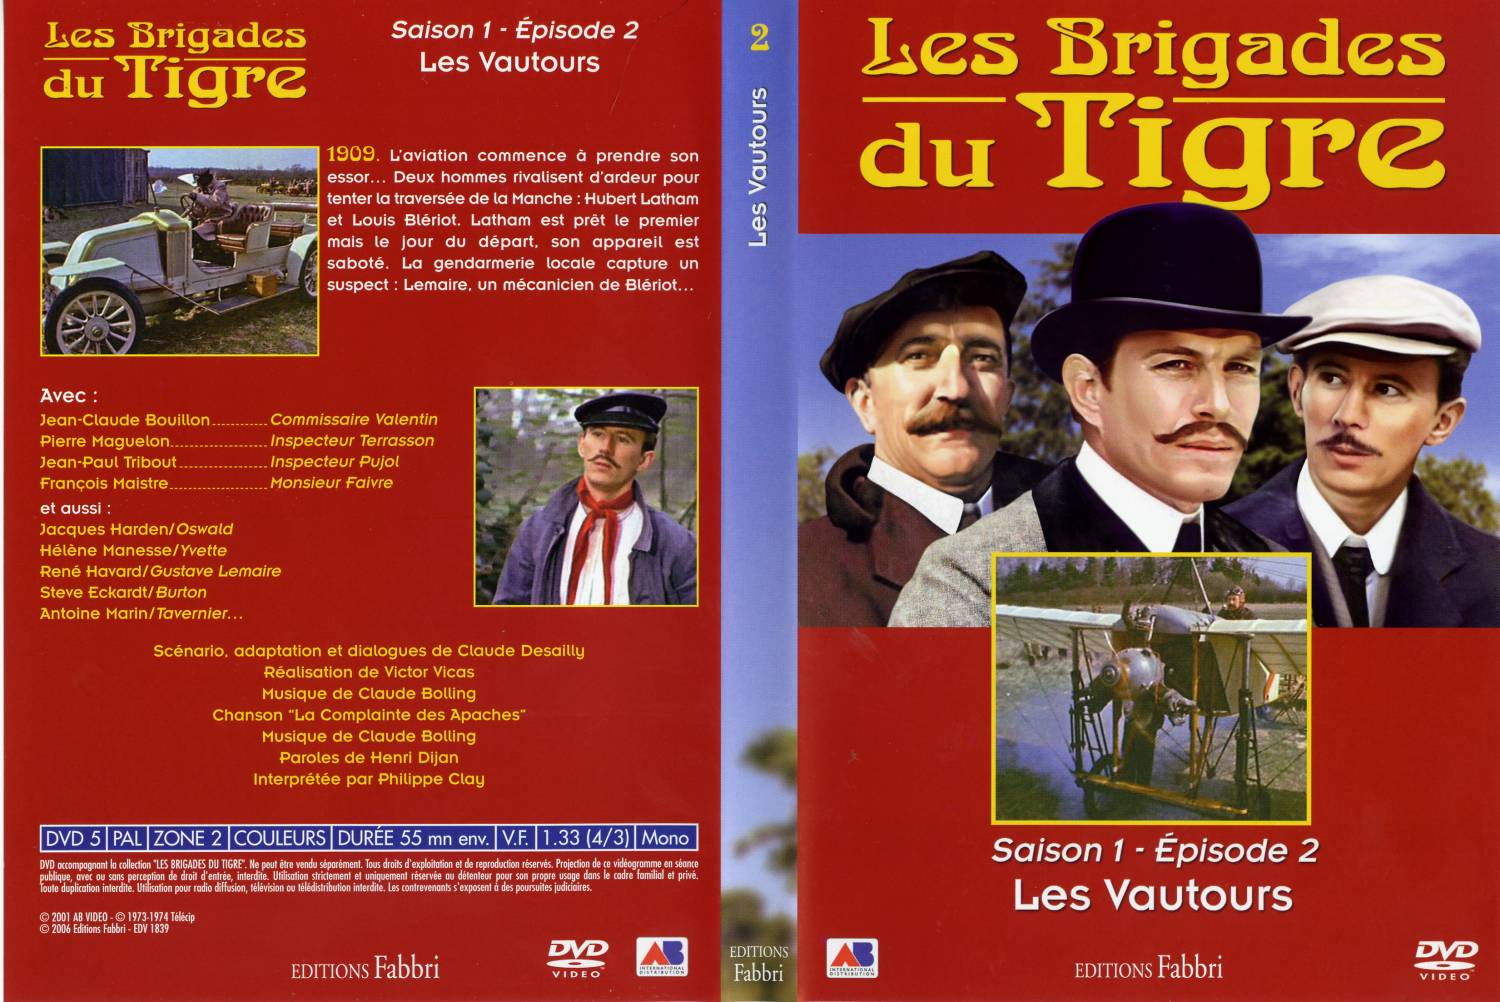 Jaquette DVD Les brigades du tigre saison 1 pisode 2